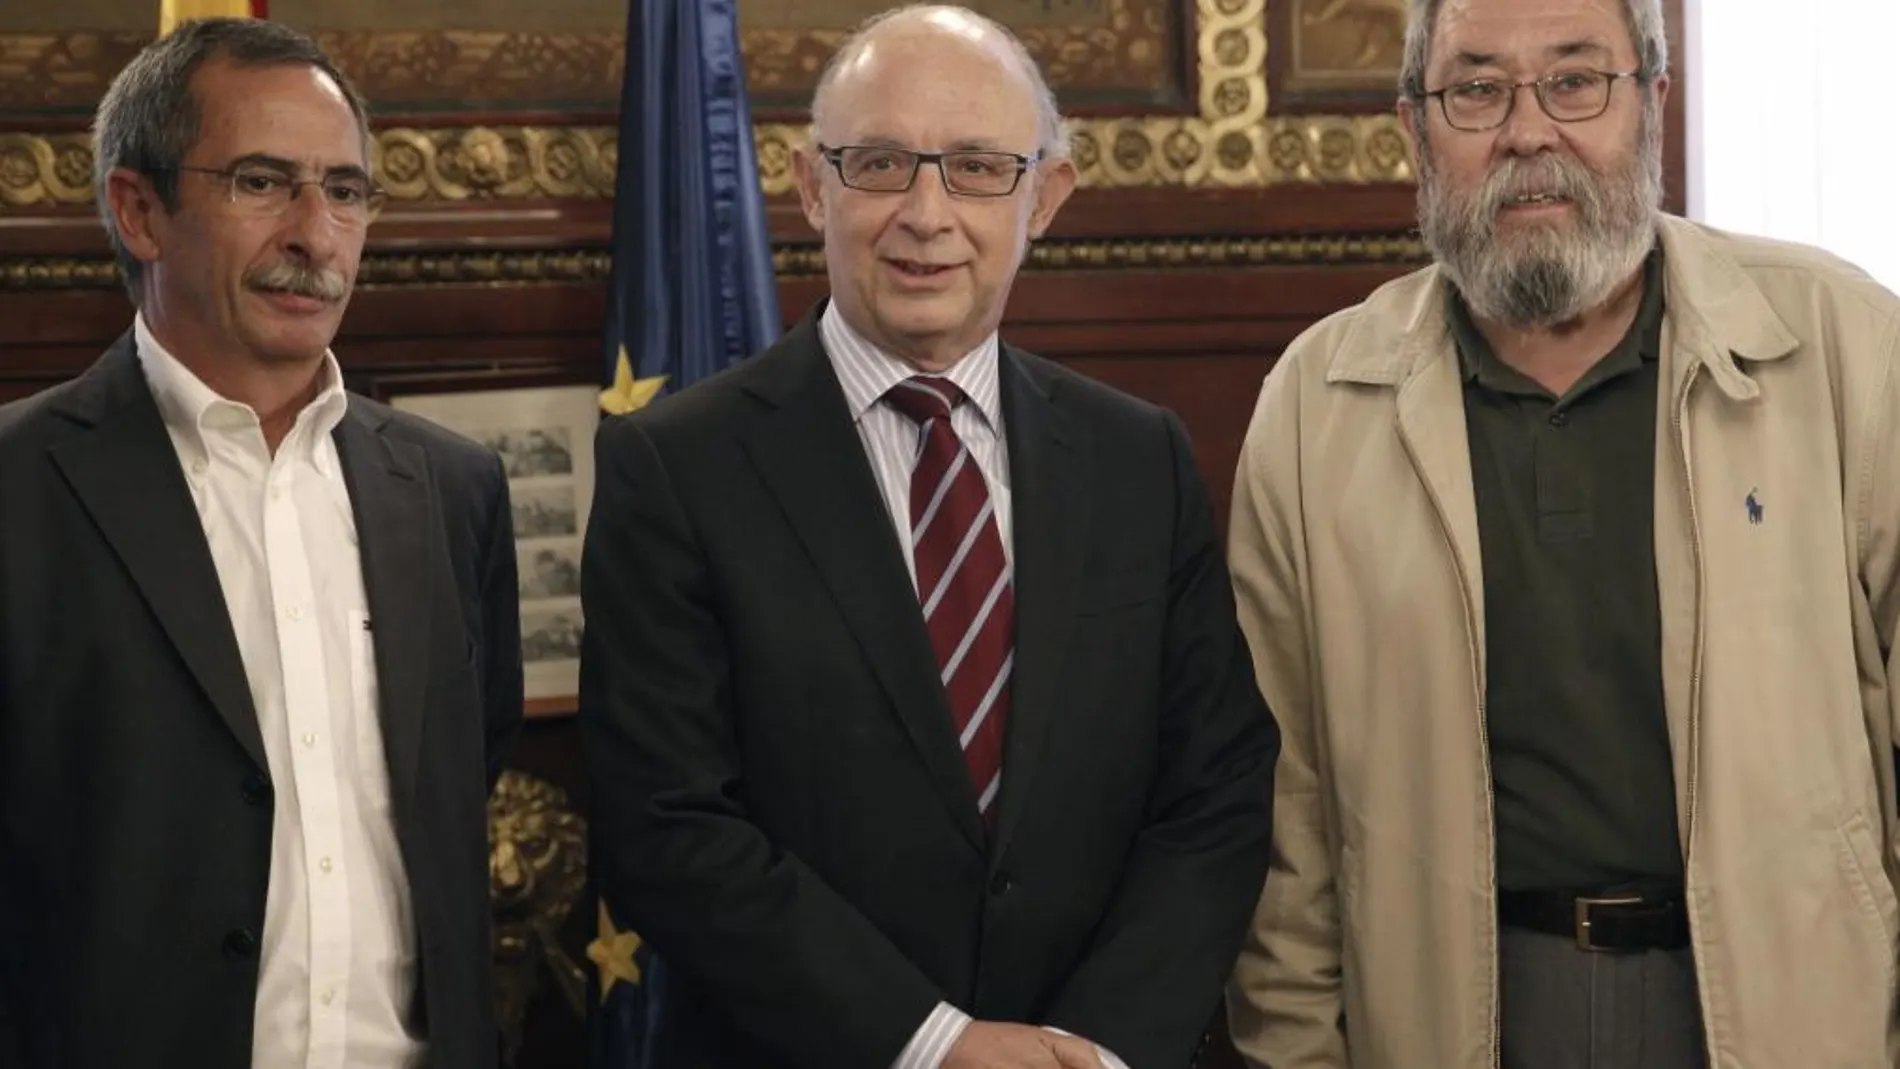 El ministro de Hacienda, Cristóbal Montoro, posa junto al secretario general de UGT, Cándido Méndez, y el secretario de Acción Sindical de CCOO, Ramón Górriz